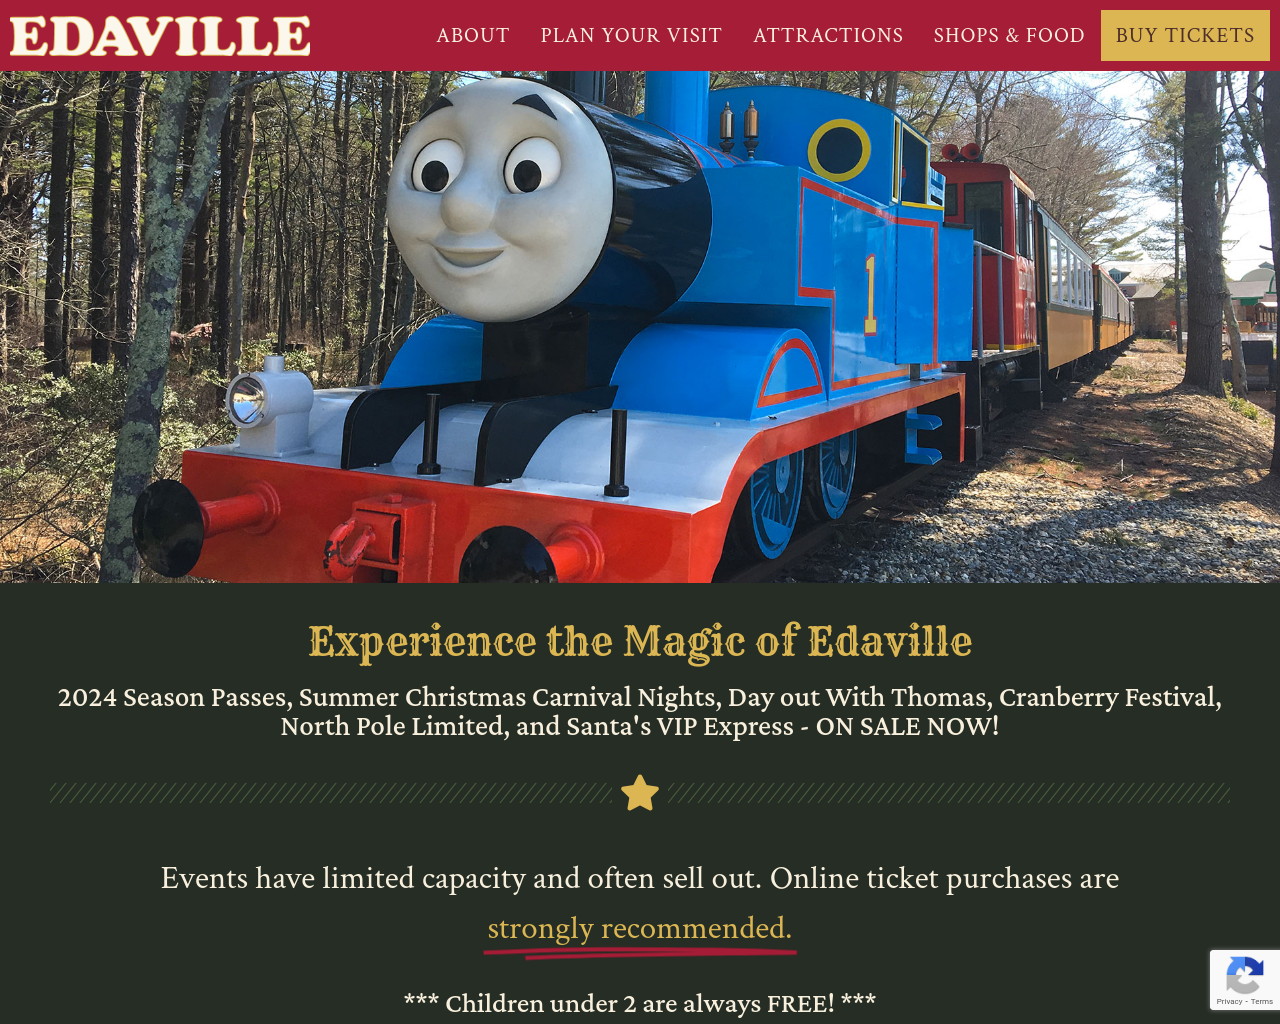 edaville.com